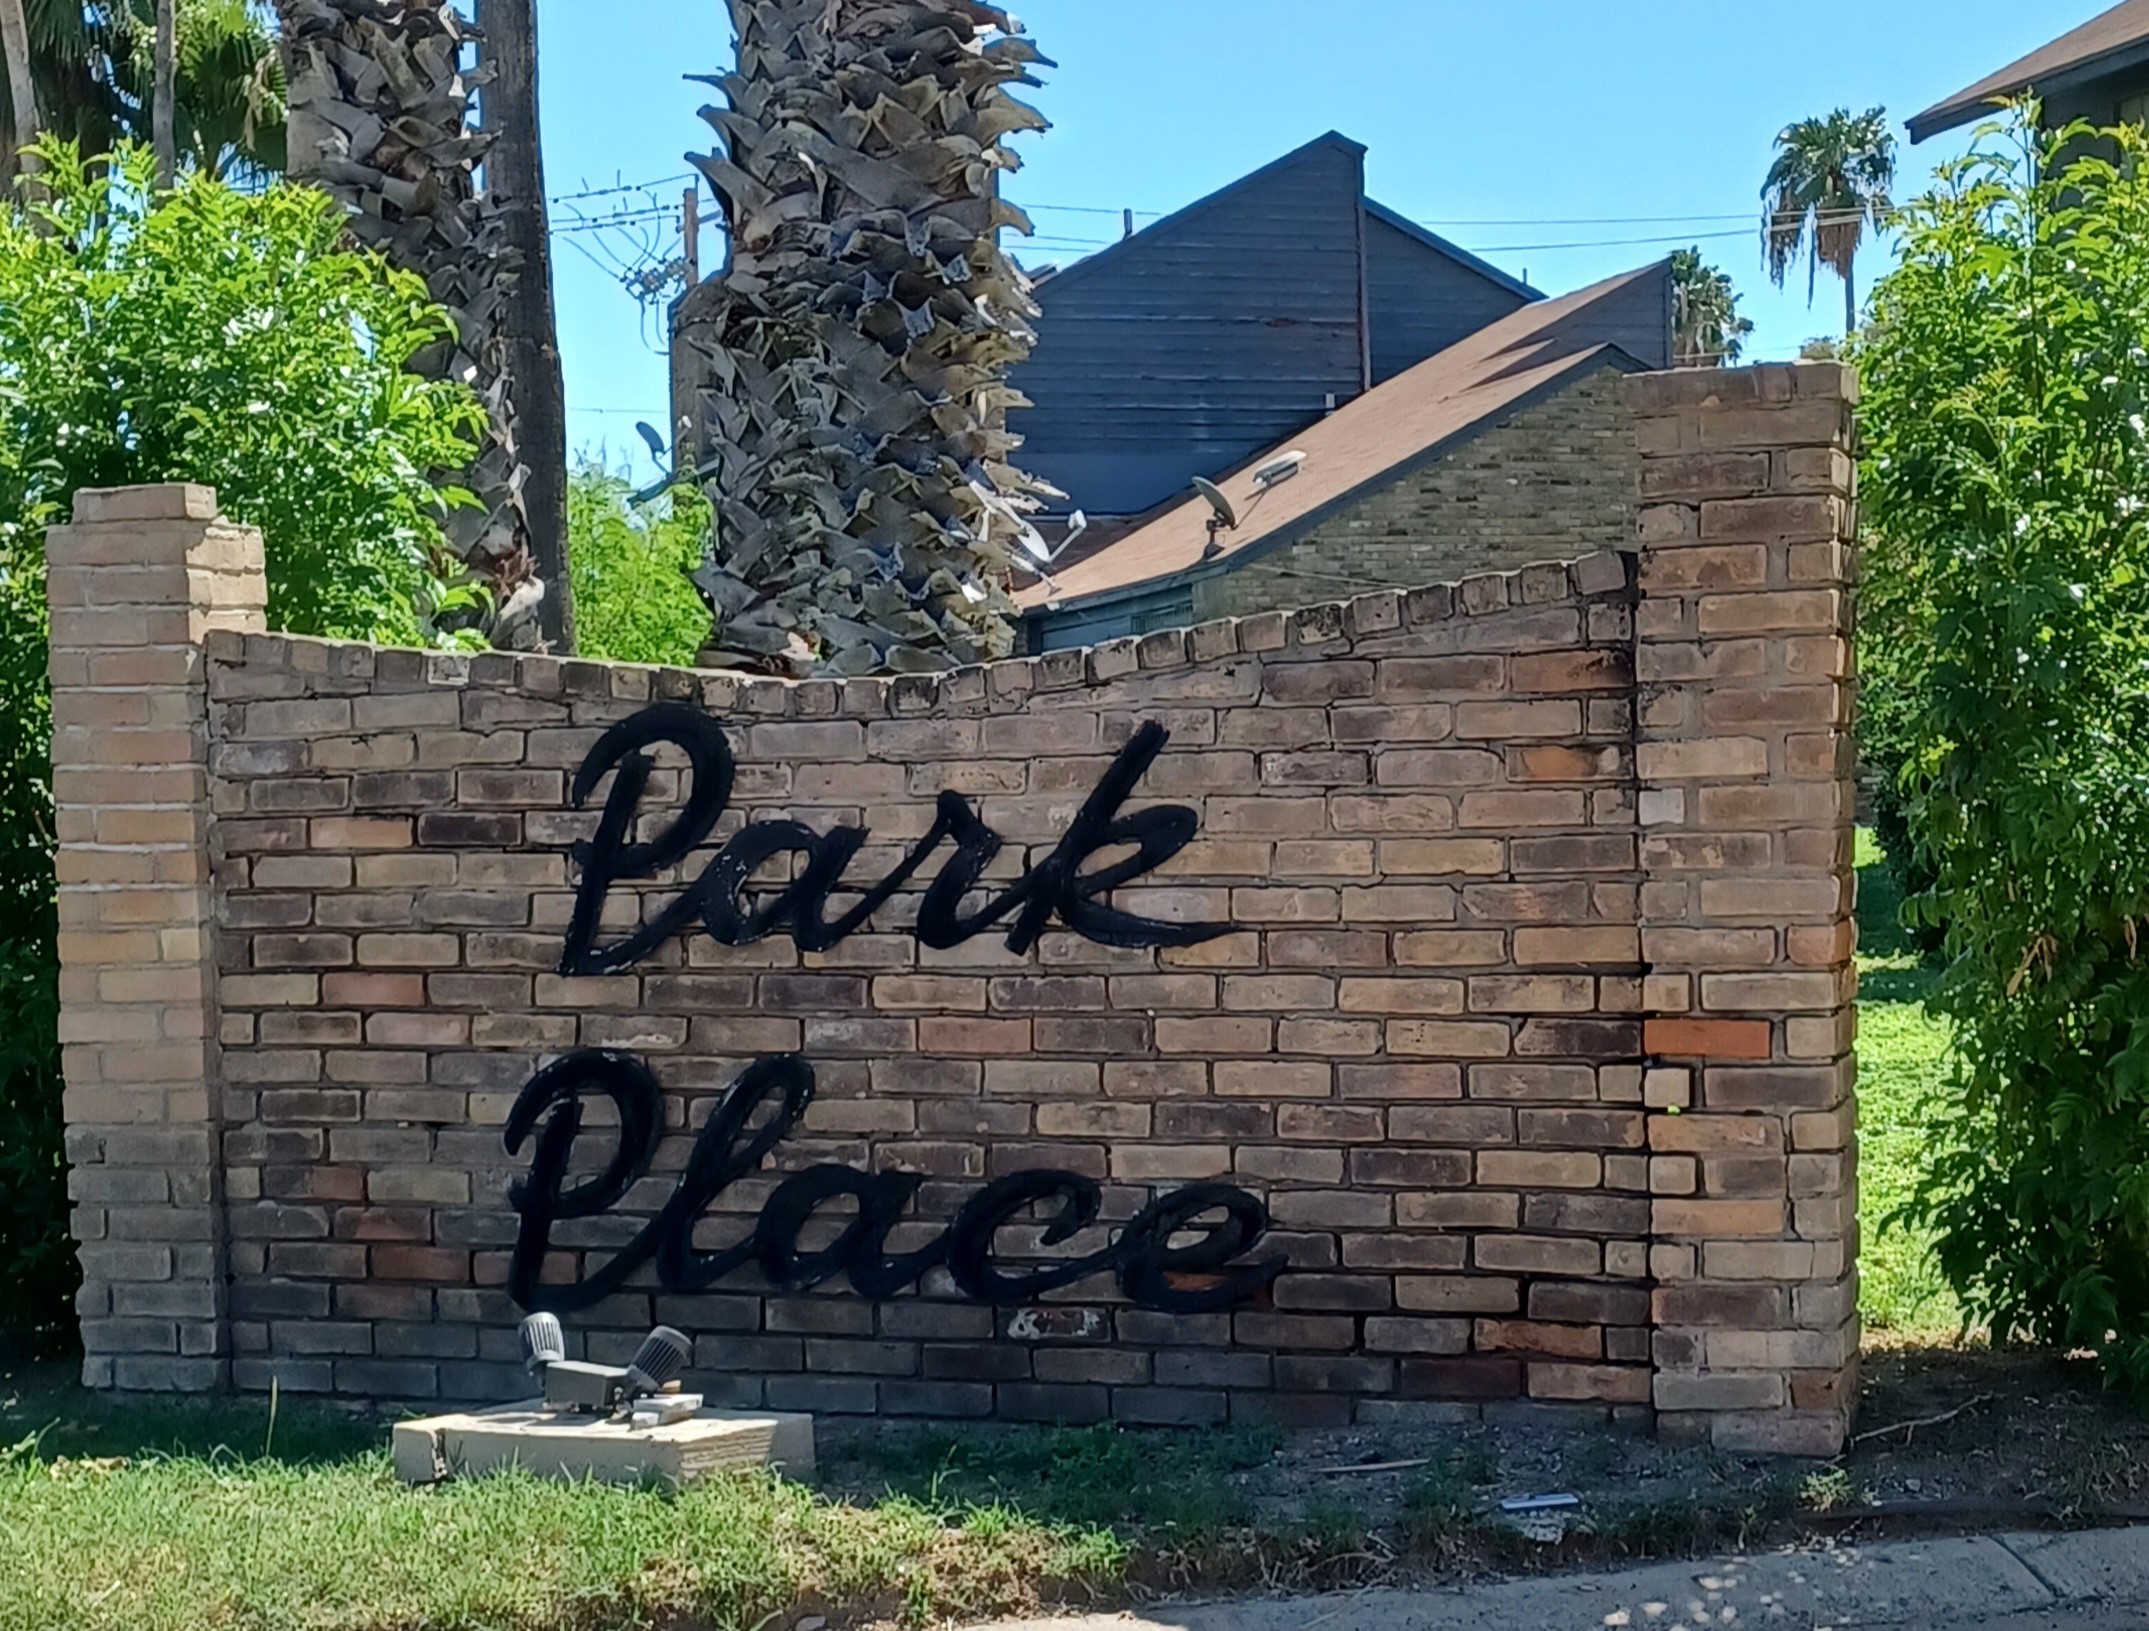 Park Place Condominiums